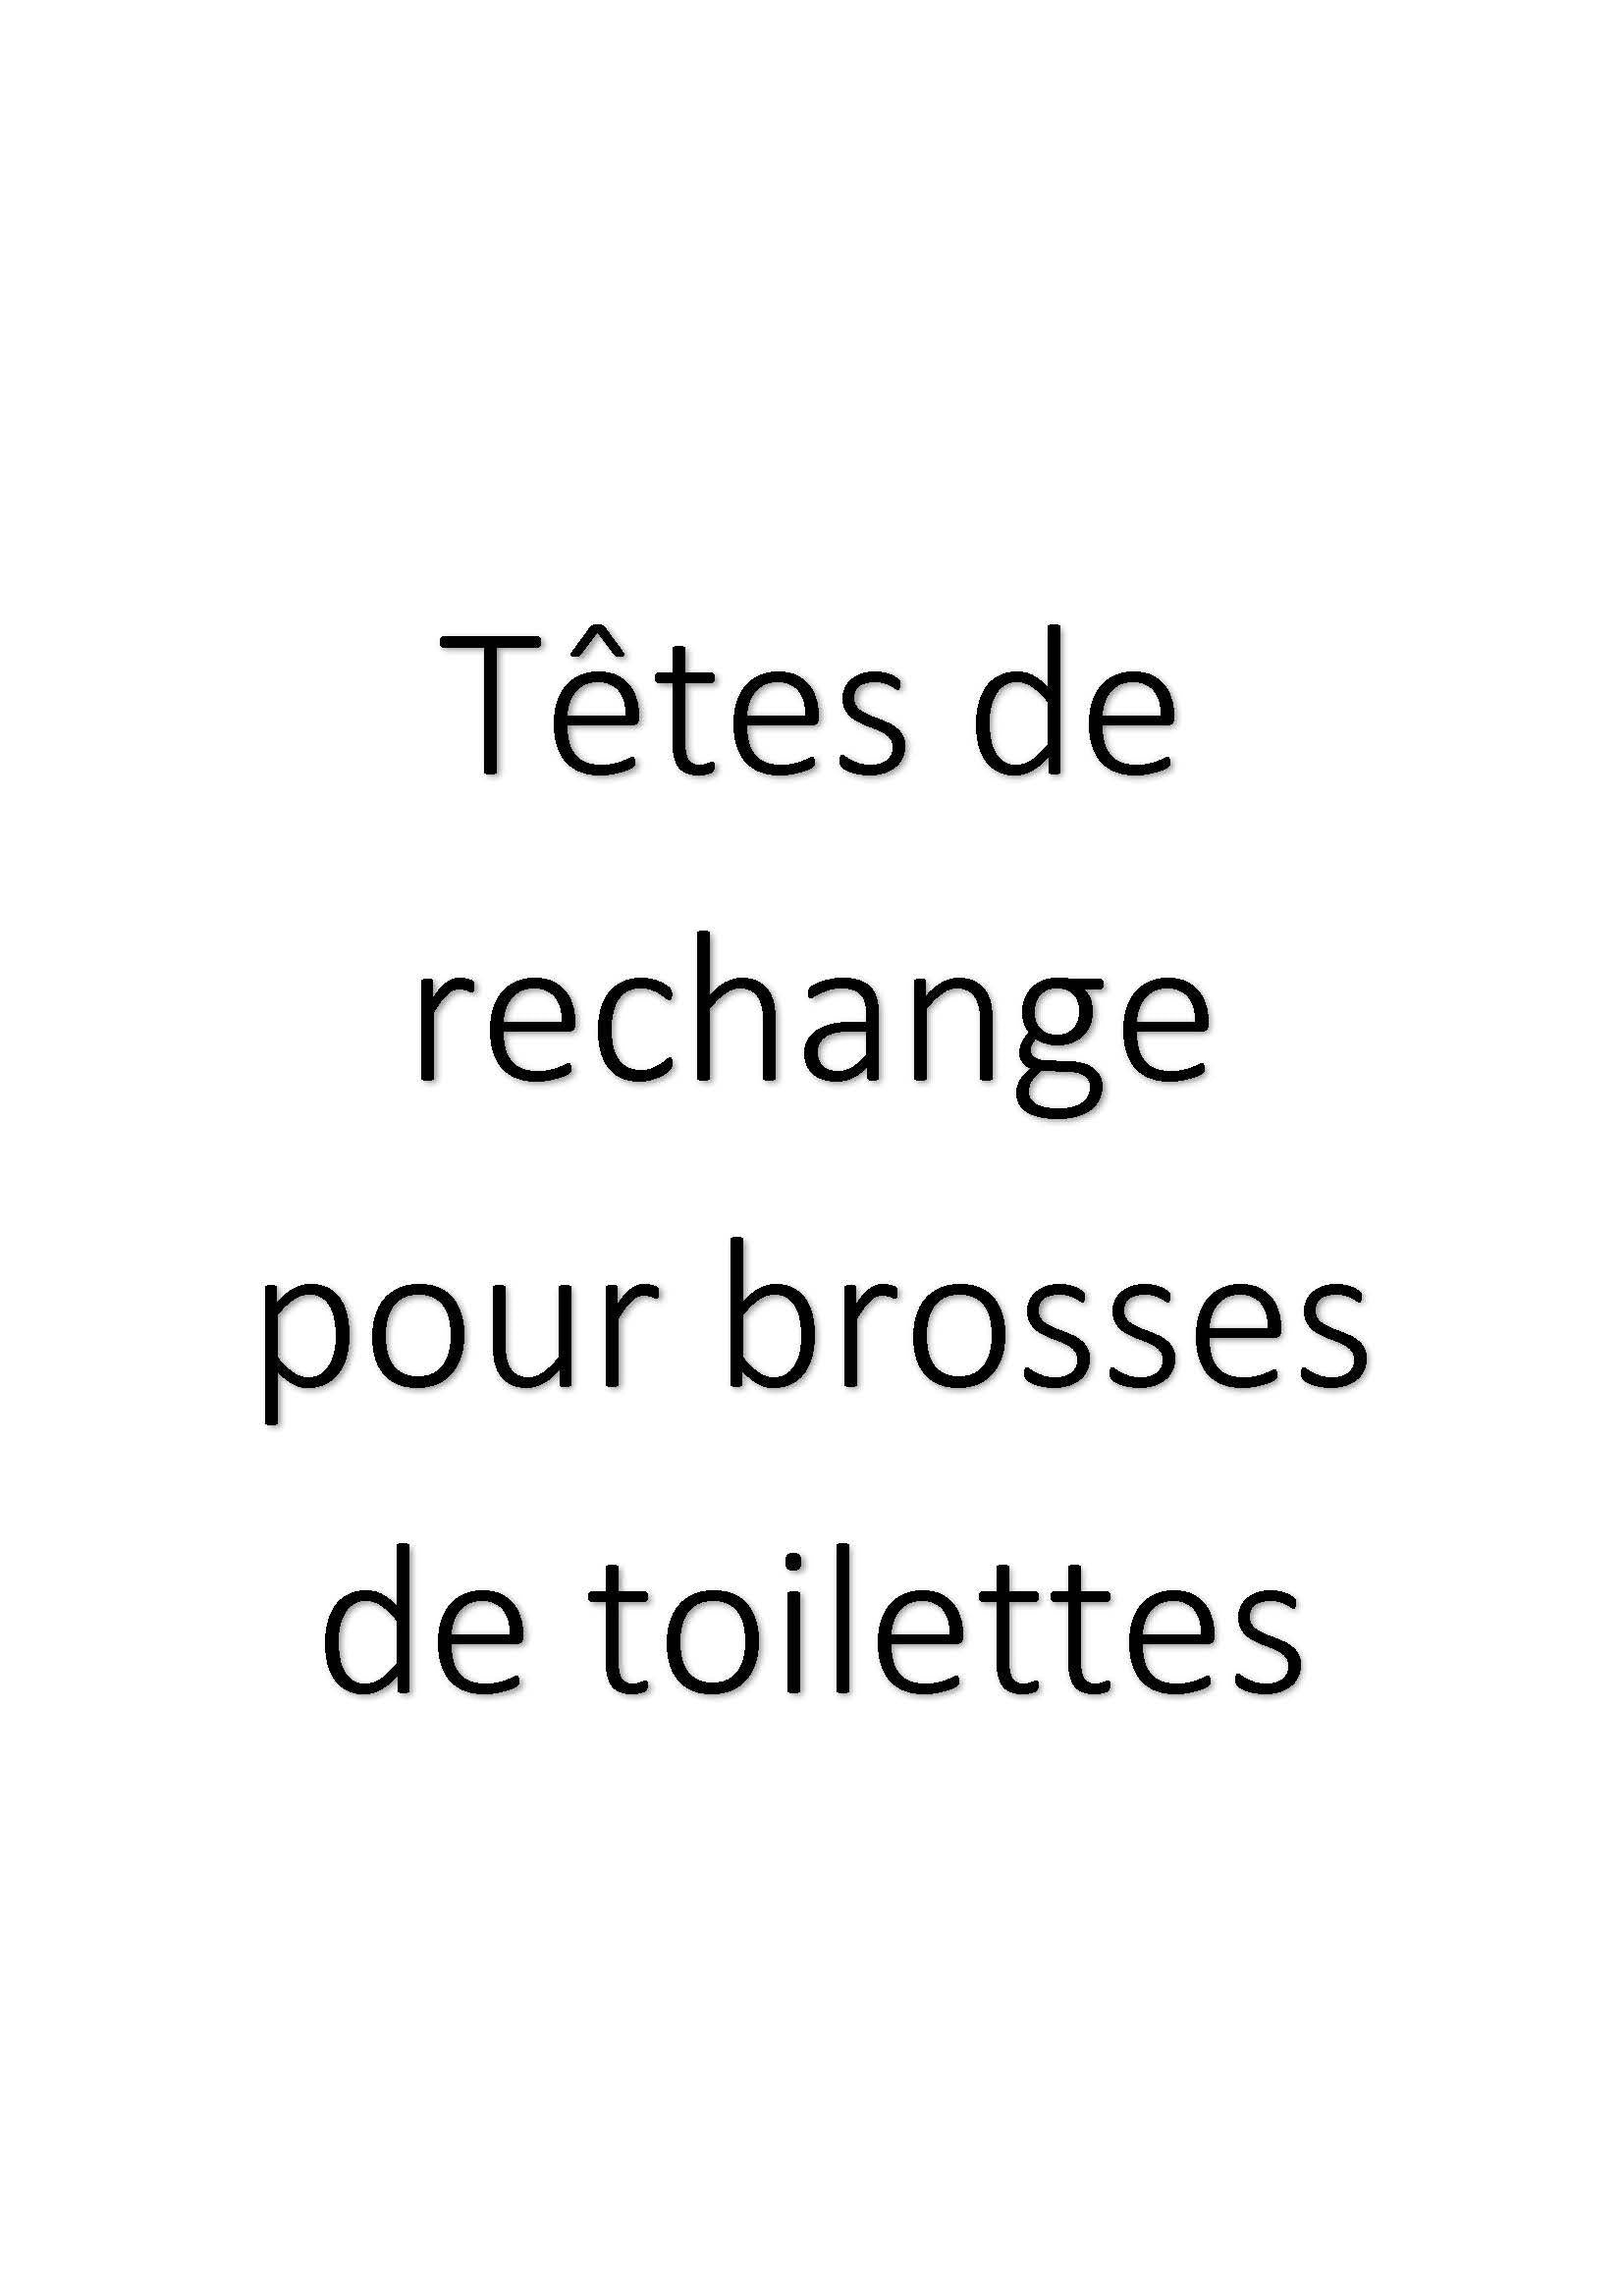 Têtes de rechange pour brosses de toilettes clicktofournisseur.com